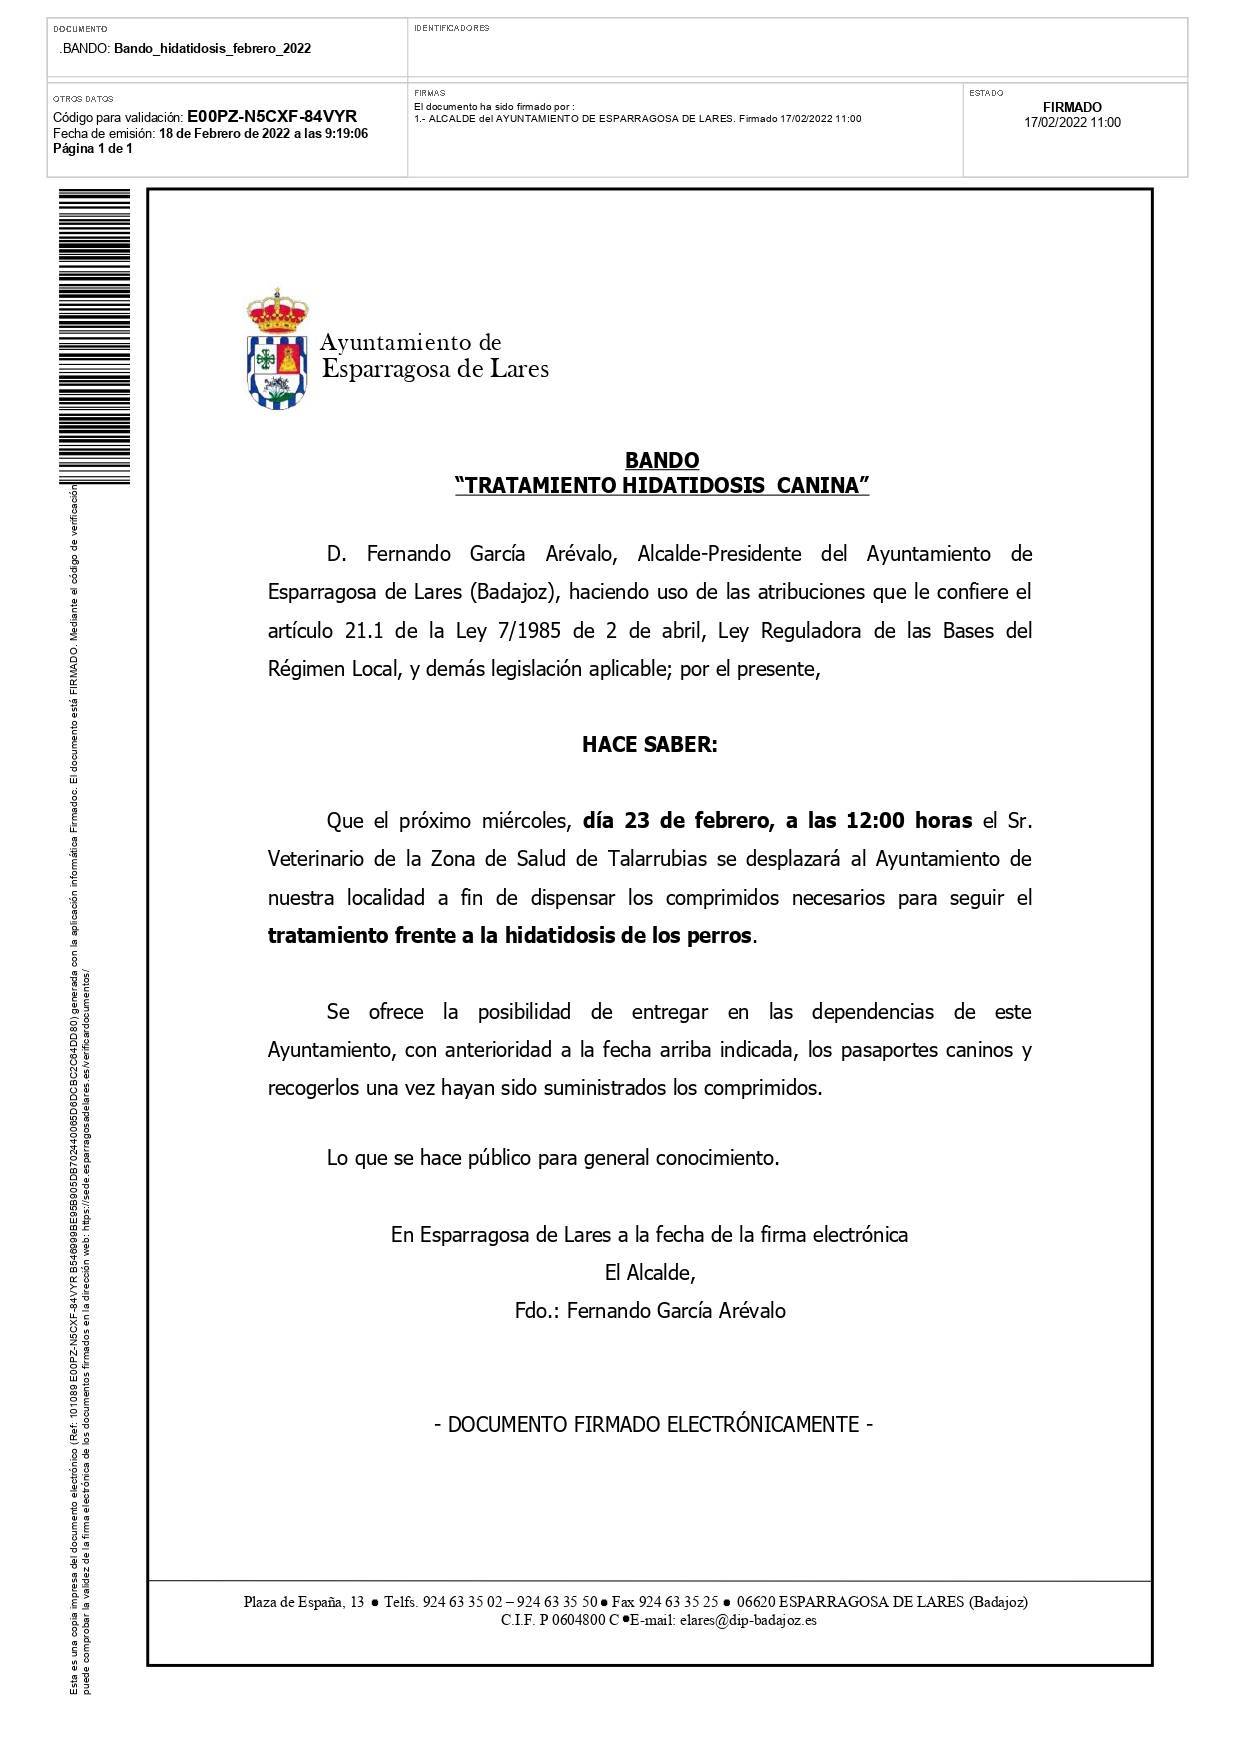 Tratamiento hidatidosis canina (febrero 2022) - Esparragosa de Lares (Badajoz)